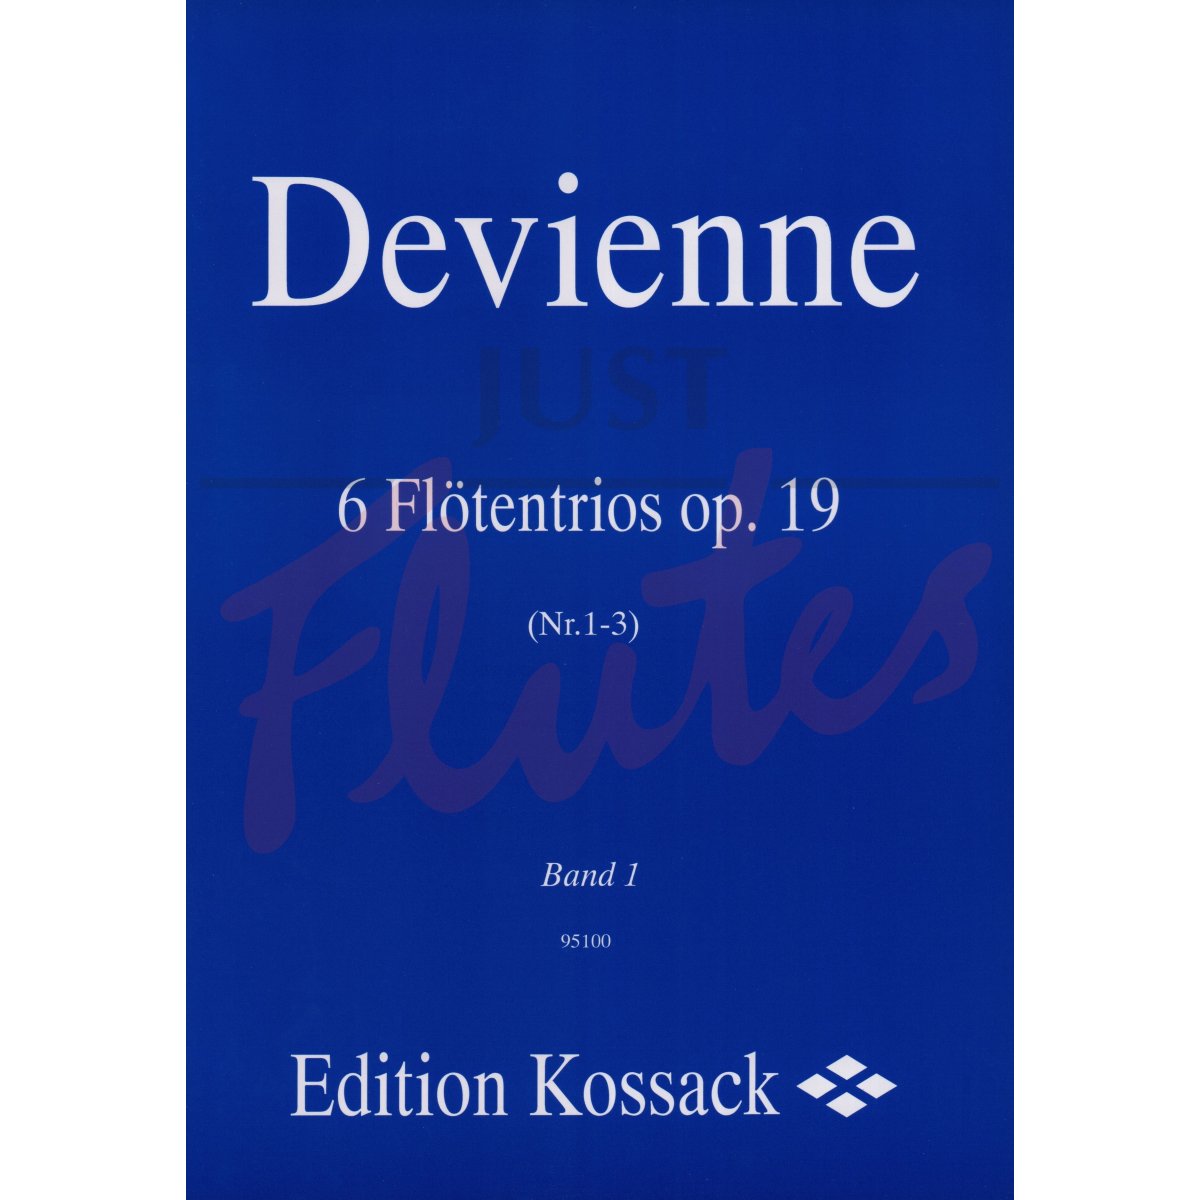 6 Flute Trios Book 1